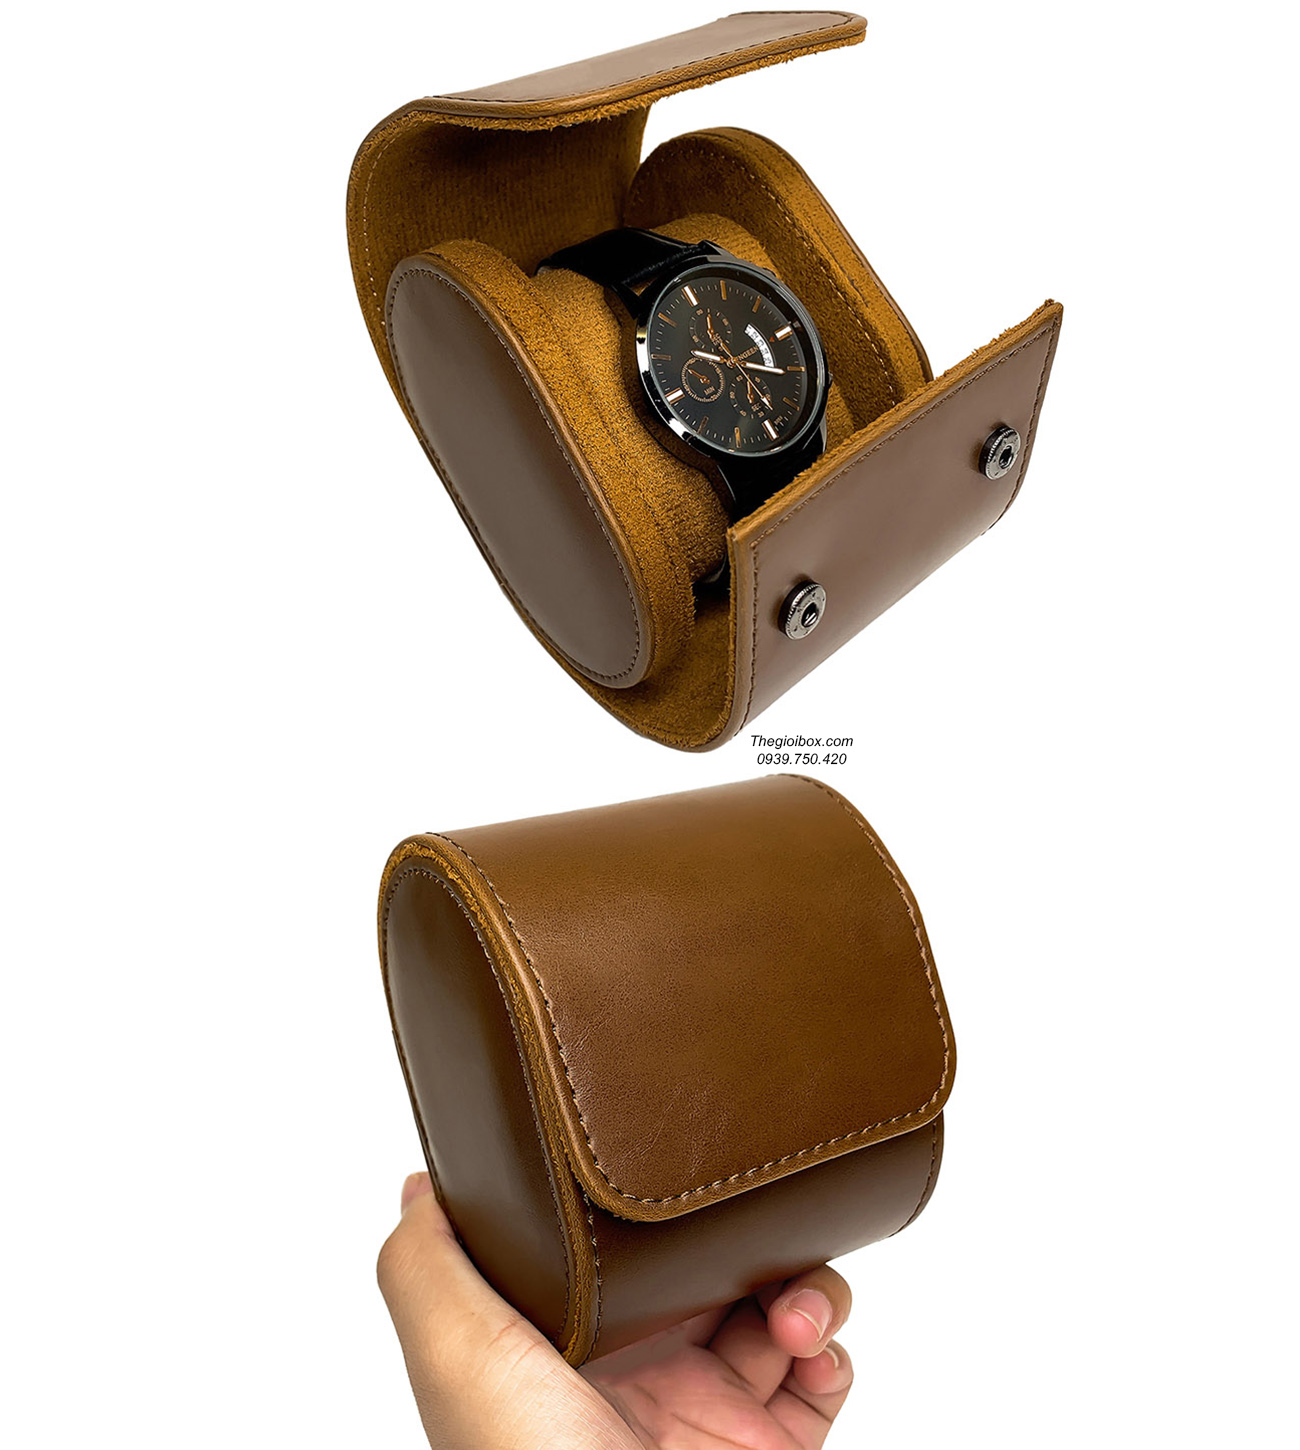 Bóp da mini để đồng hồ 1 ngăn du lịch vỏ da cao cấp giá rẻ